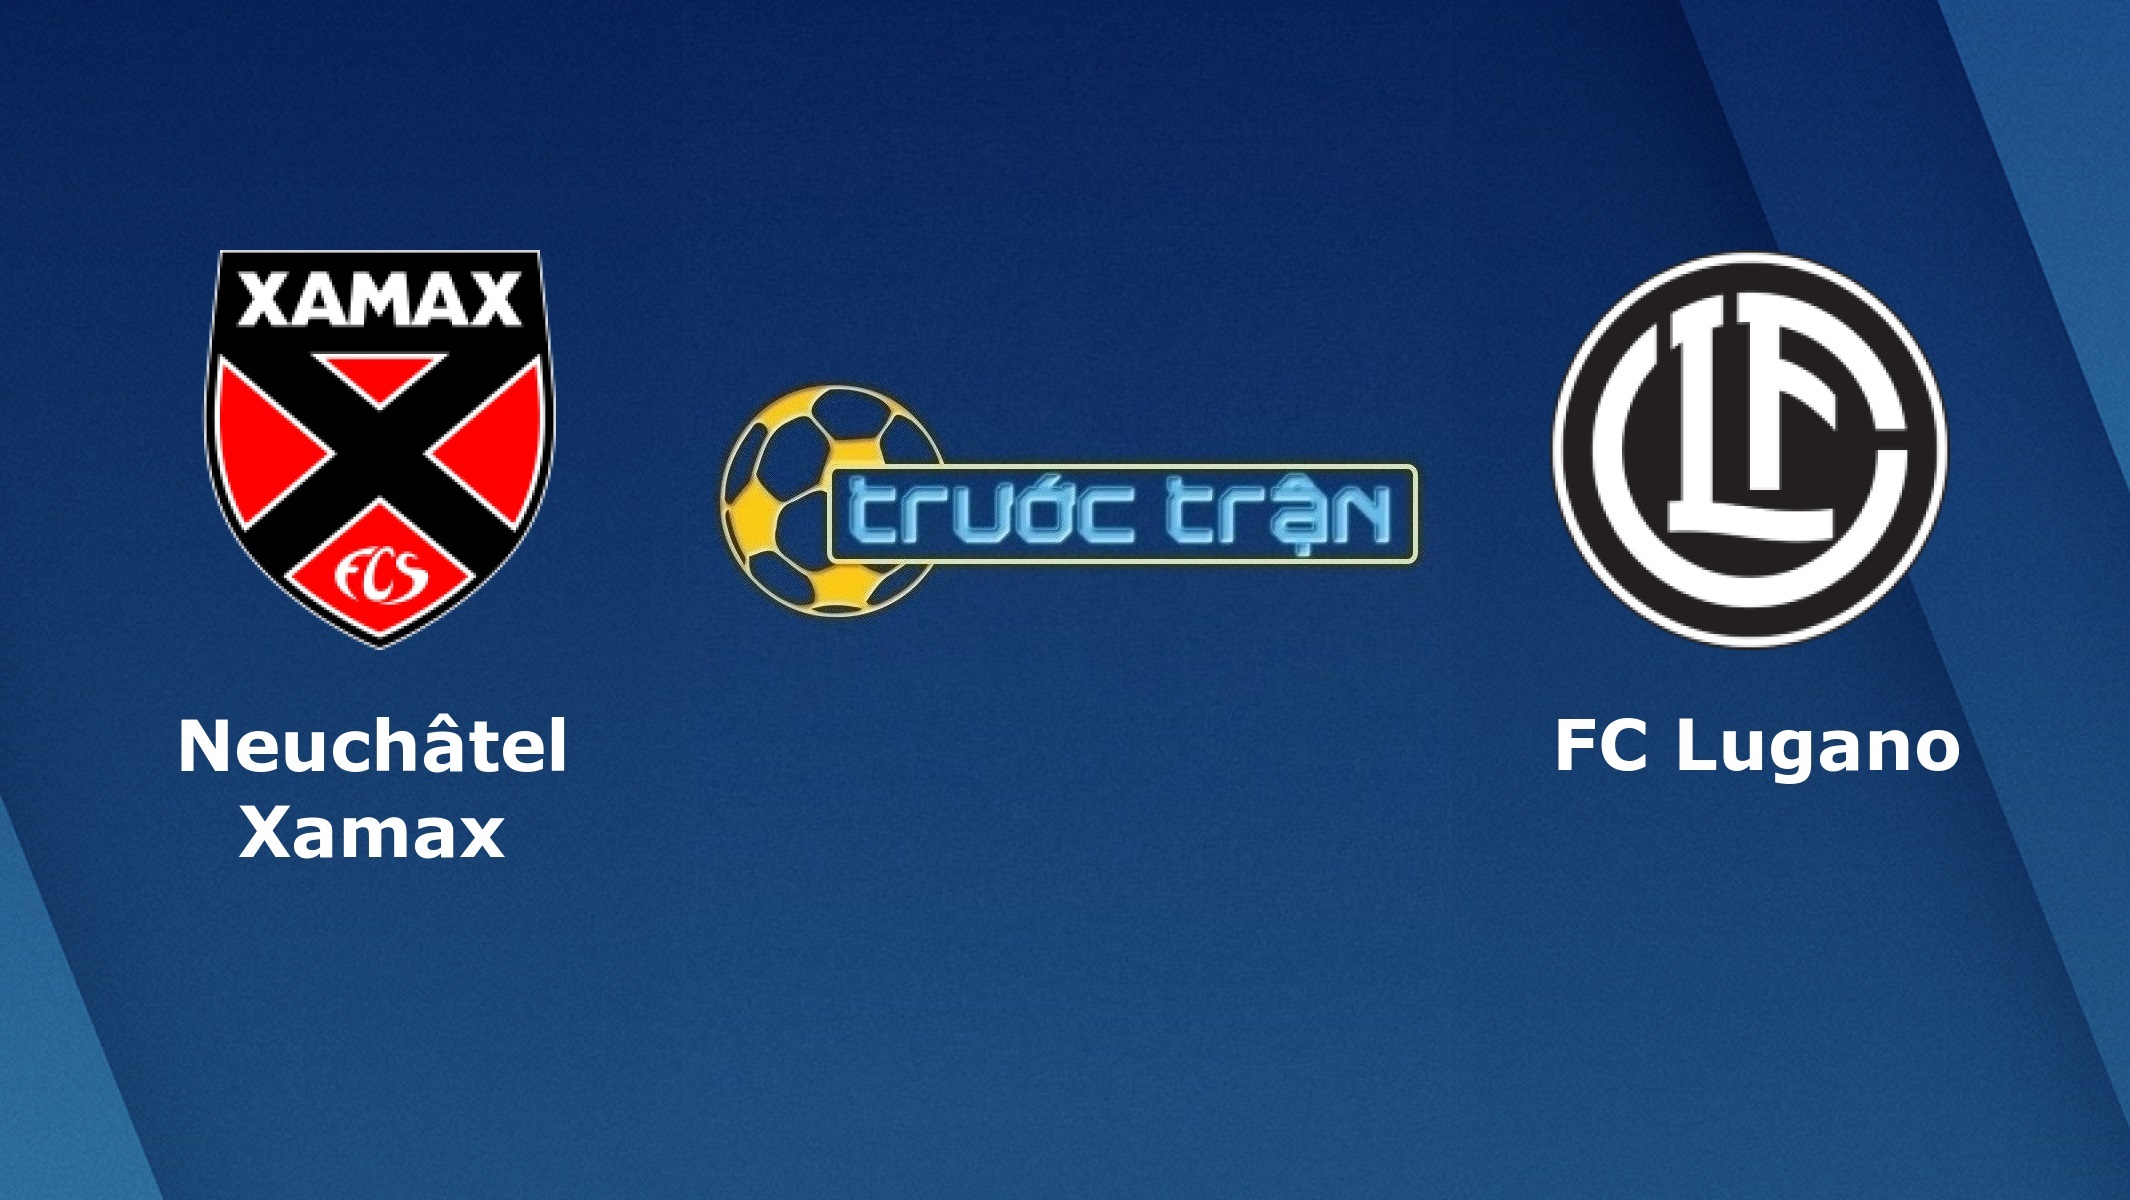 Neuchatel Xamax vs FC Lugano – Tip kèo bóng đá hôm nay – 04/08